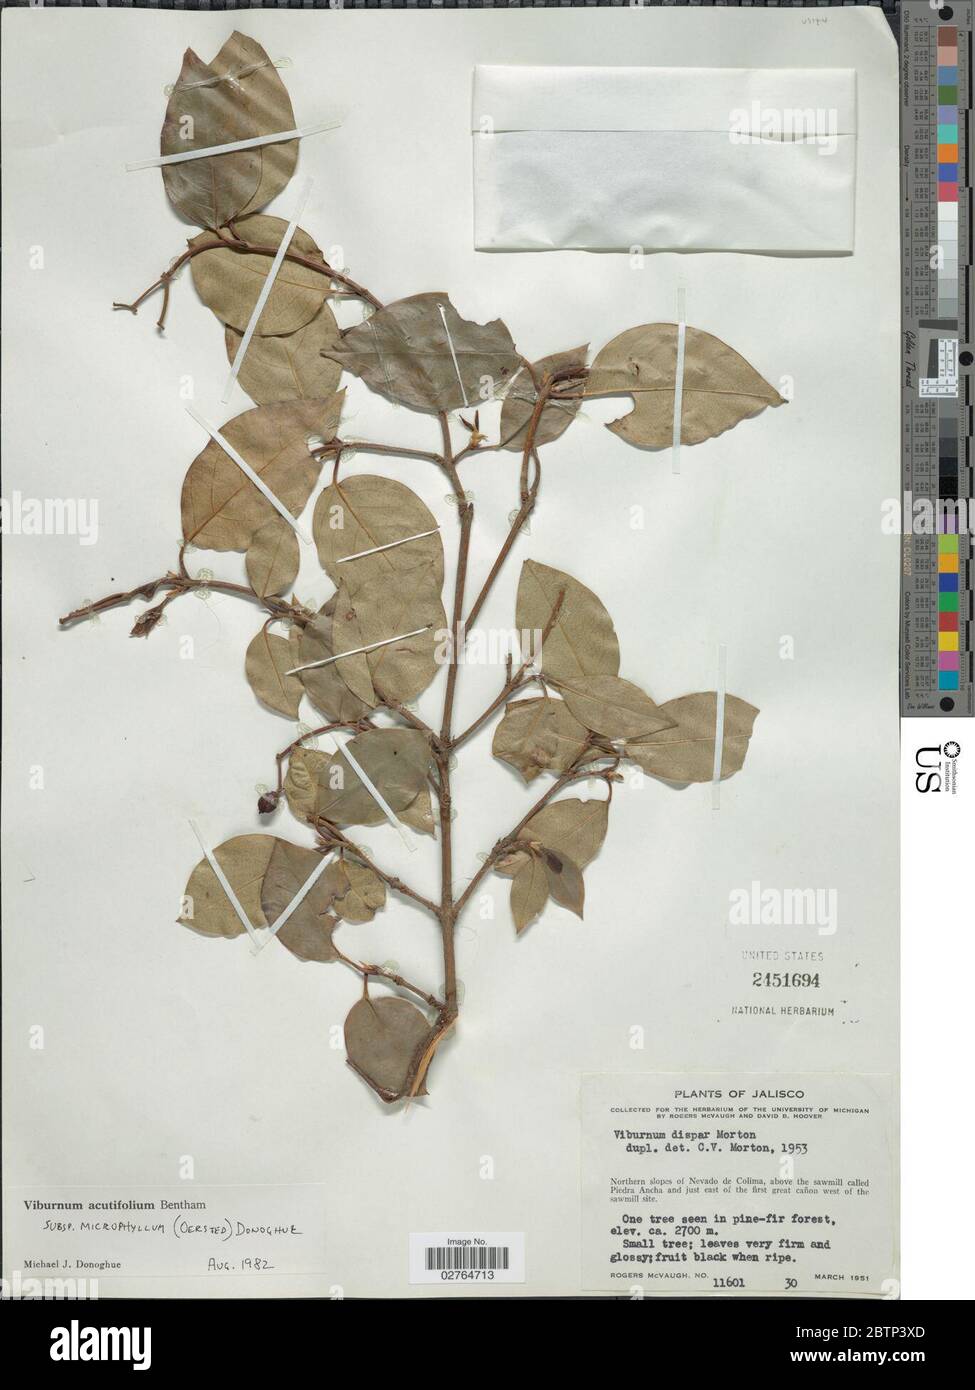 Viburnum acutifolium subsp microphyllum. Stock Photo